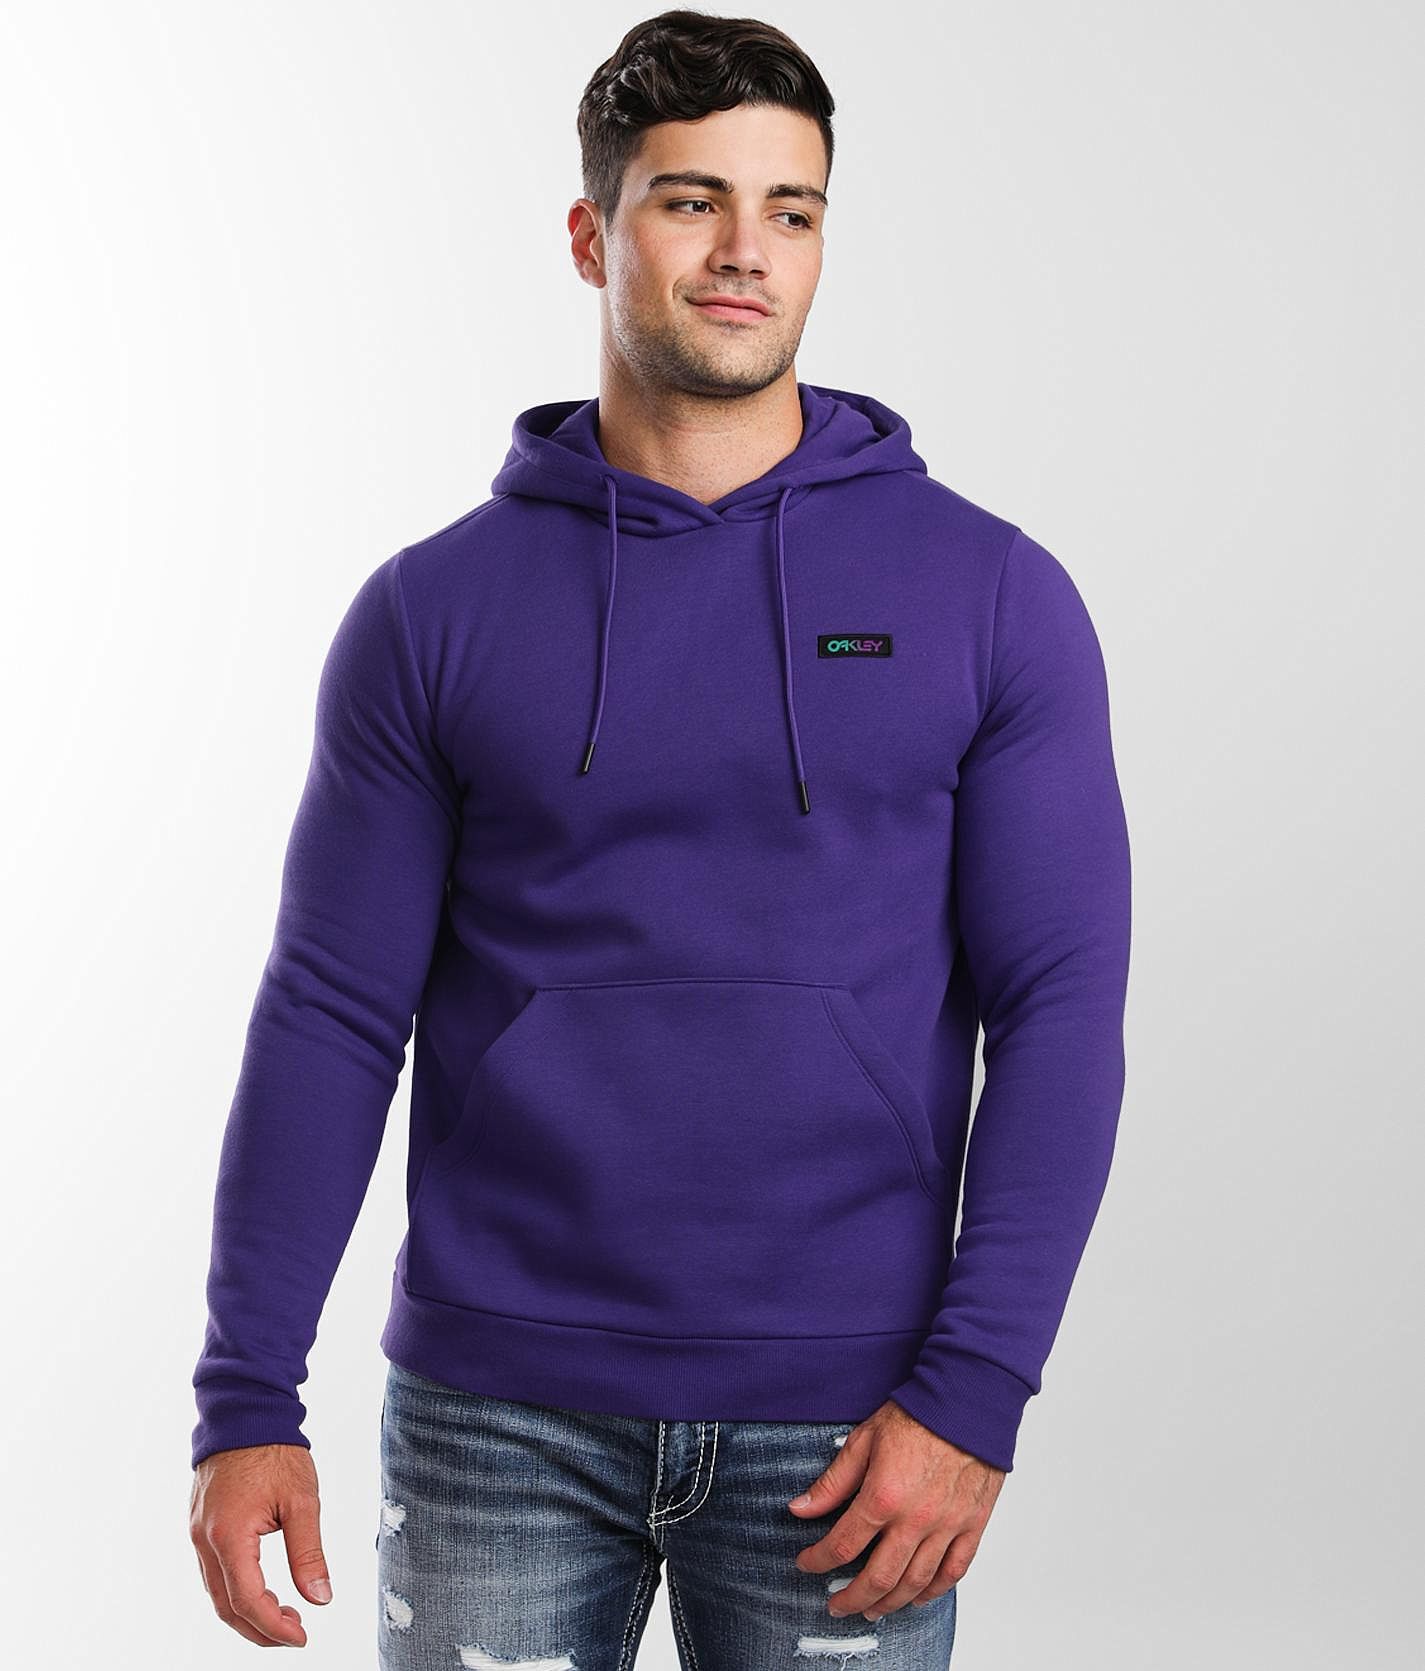 Oakley Gradient Patch Hooded Sweatshirt - Men's Sweatshirts in Deep Violet  | Buckle